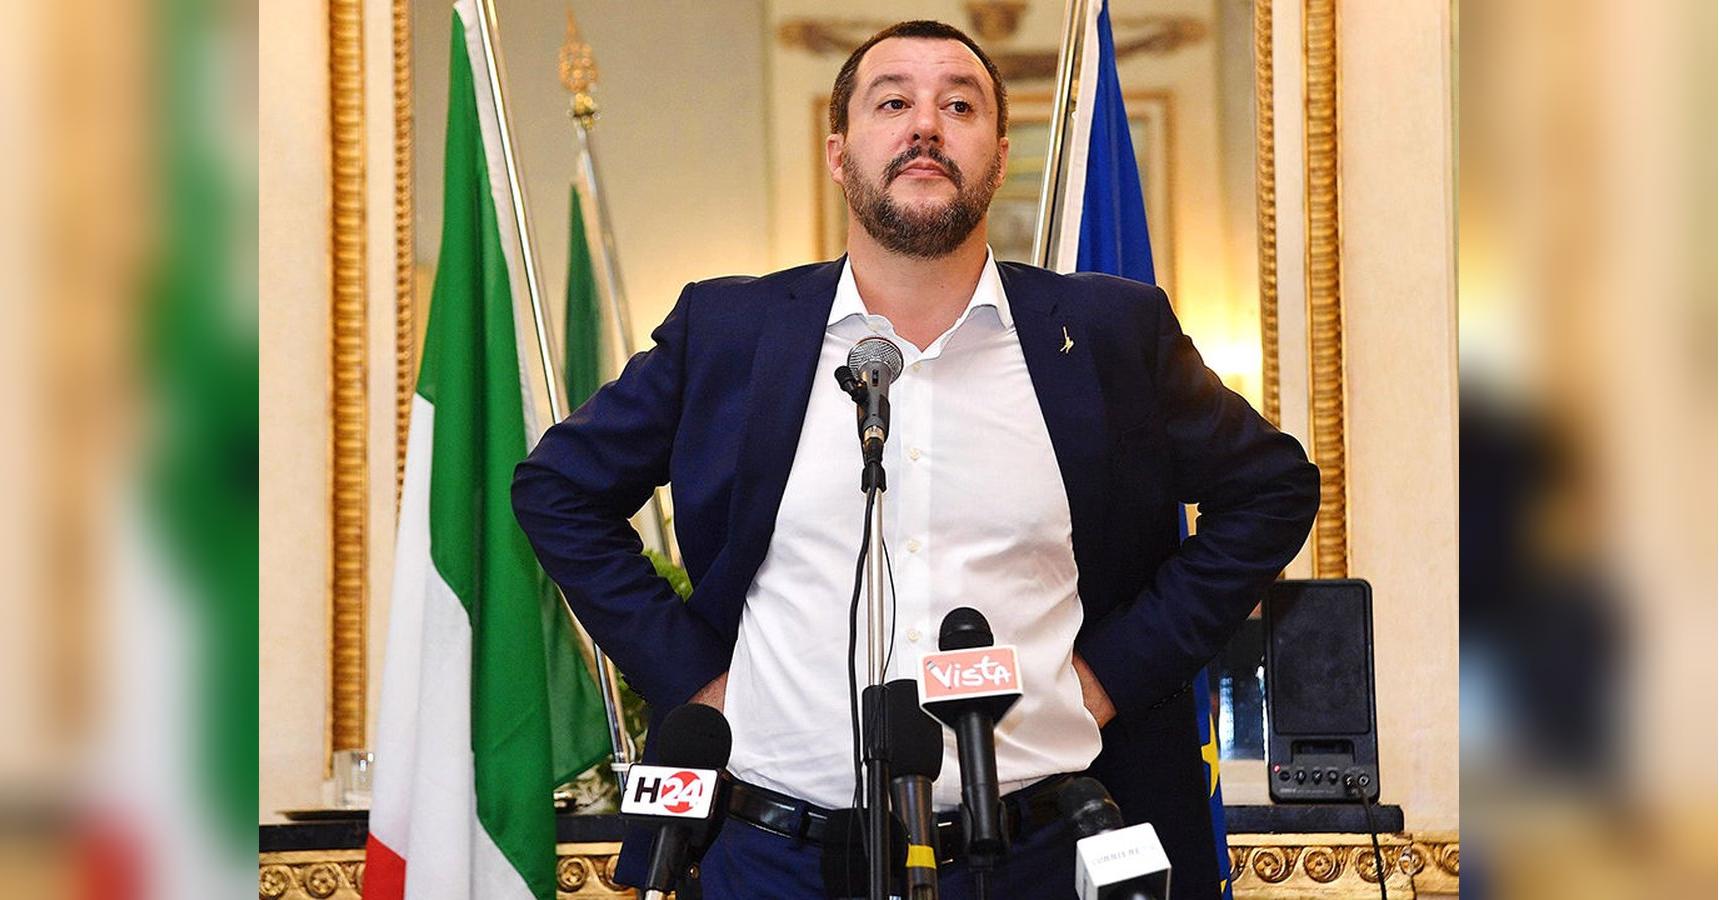 Приход Сальвини во власть стал бы трагедией для Италии и для Европы